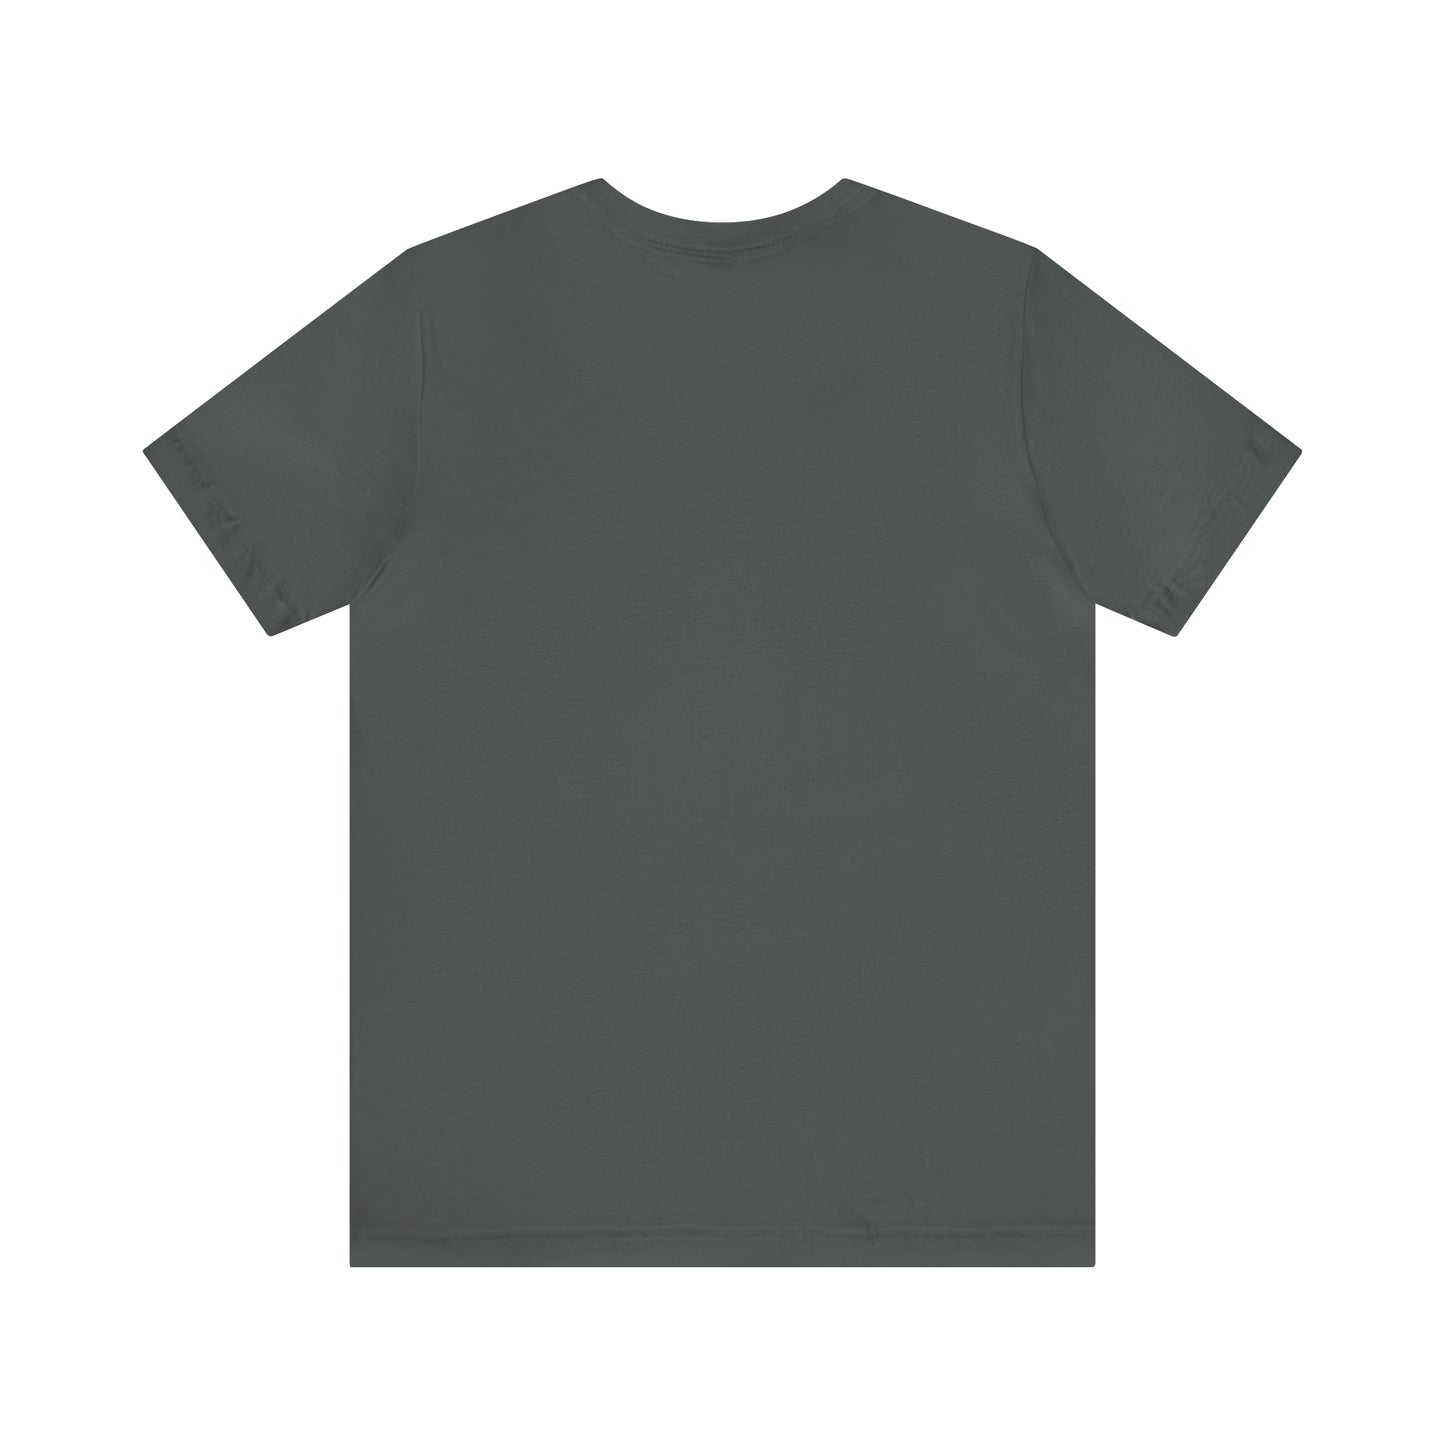 Sloth Yoga T-Shirt